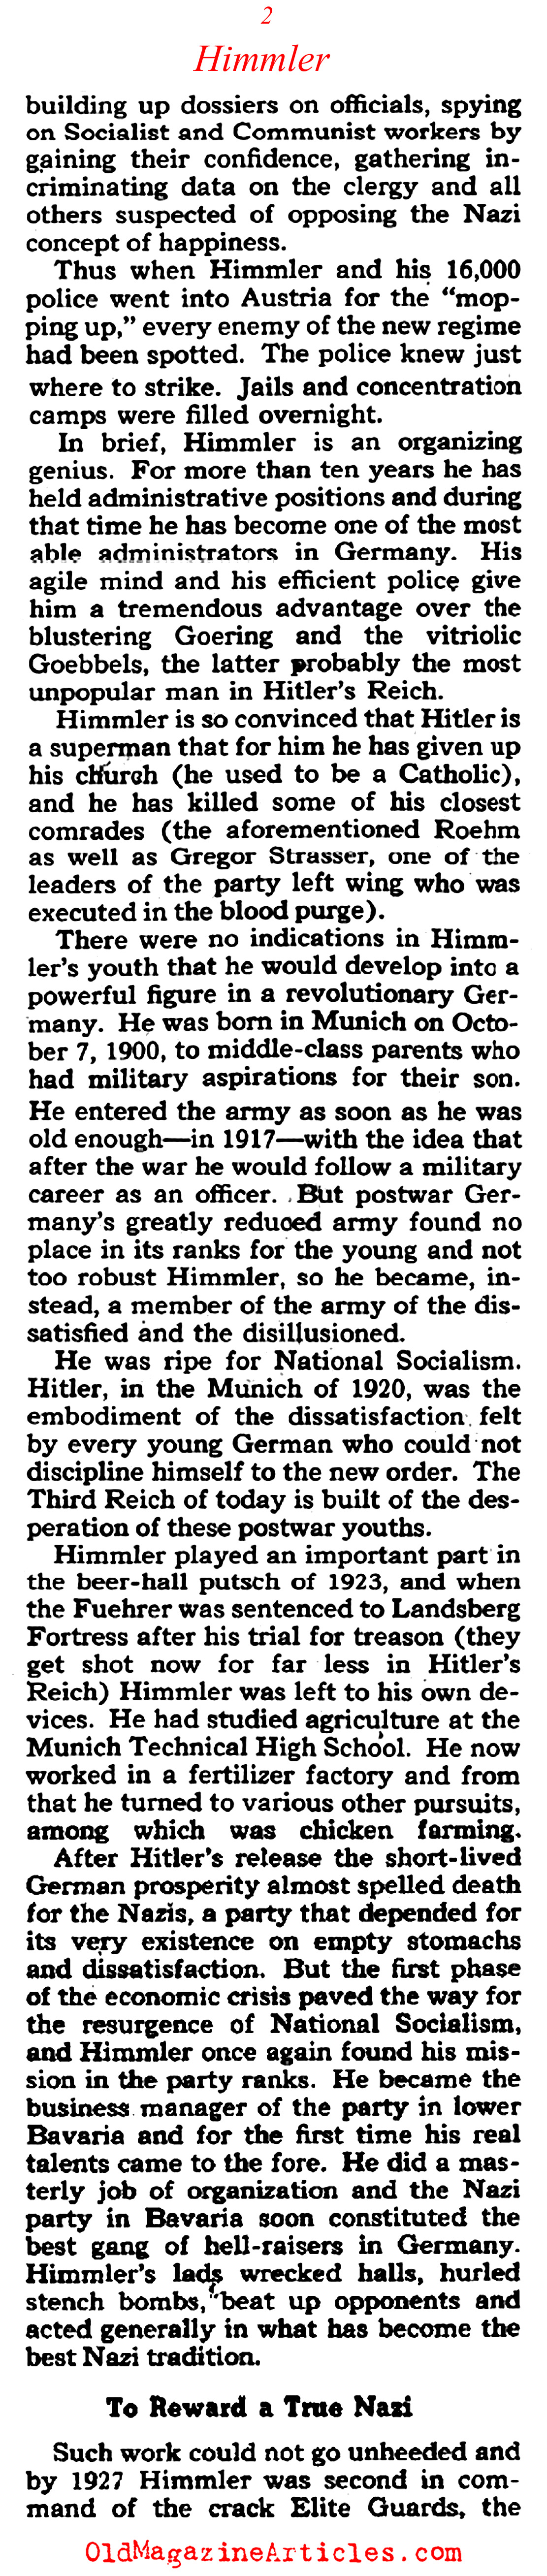 Heinrich Himmler (Collier's Magazine, 1938)